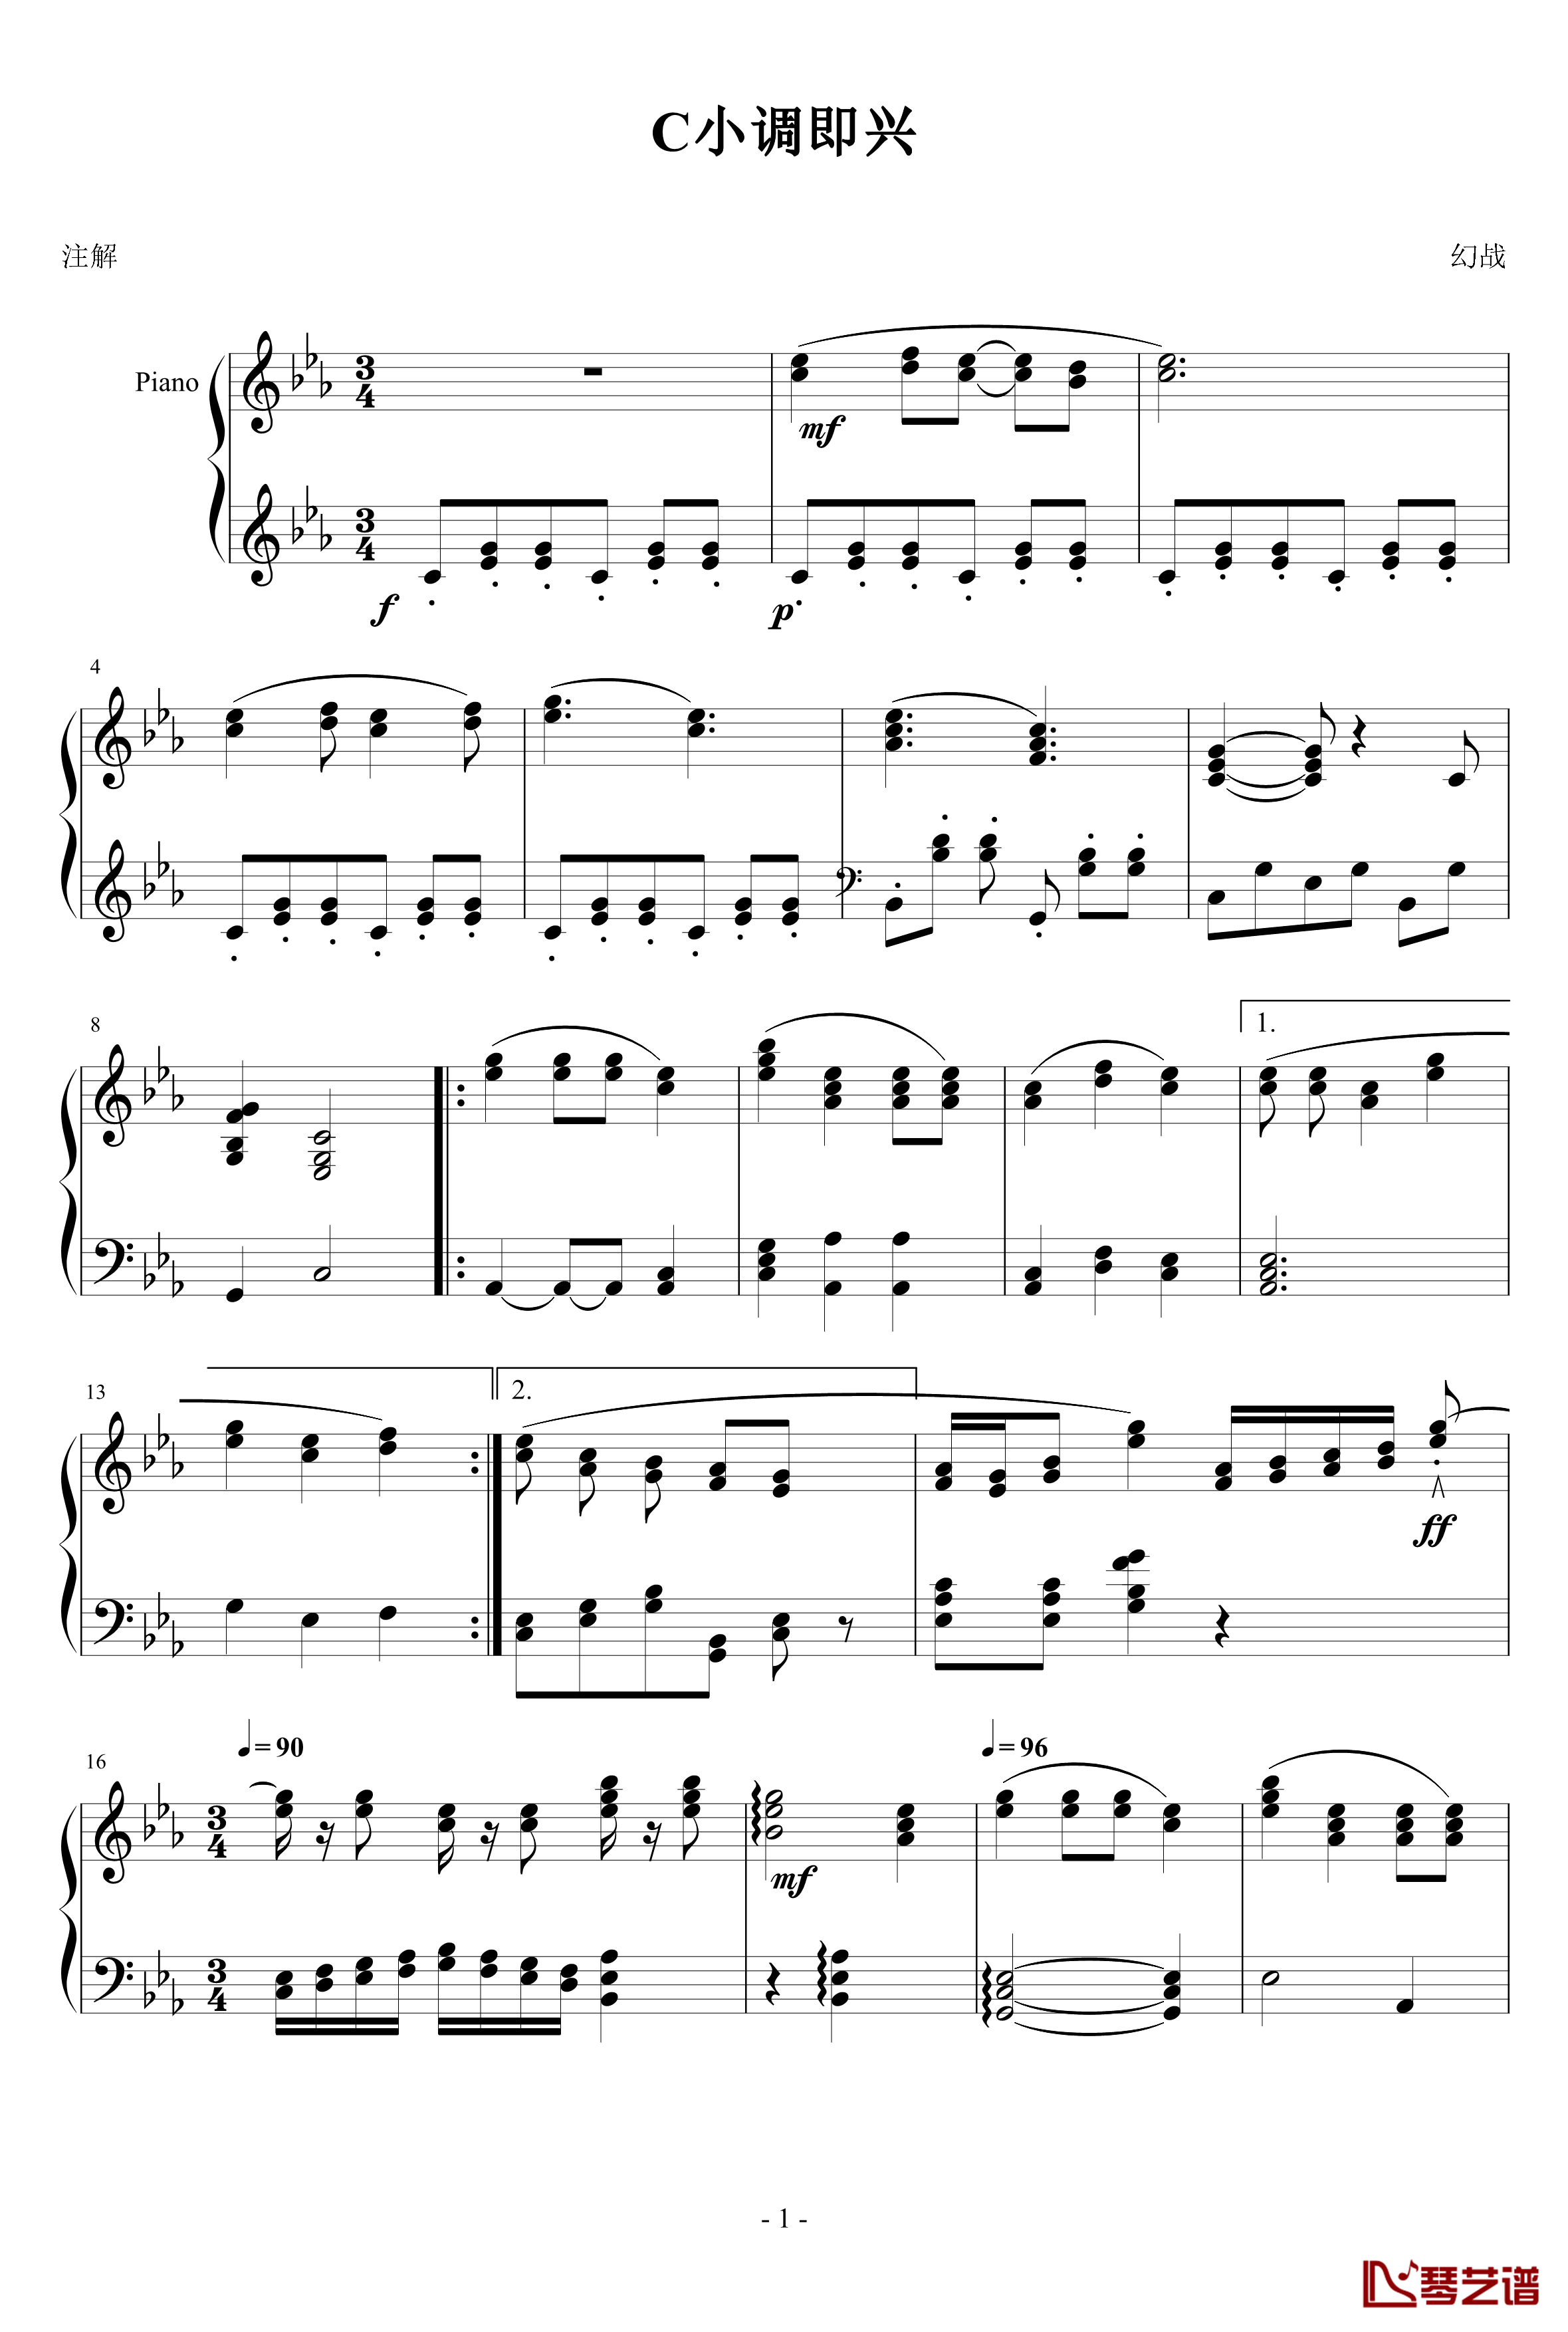 C小调即兴练习钢琴谱-幻战1